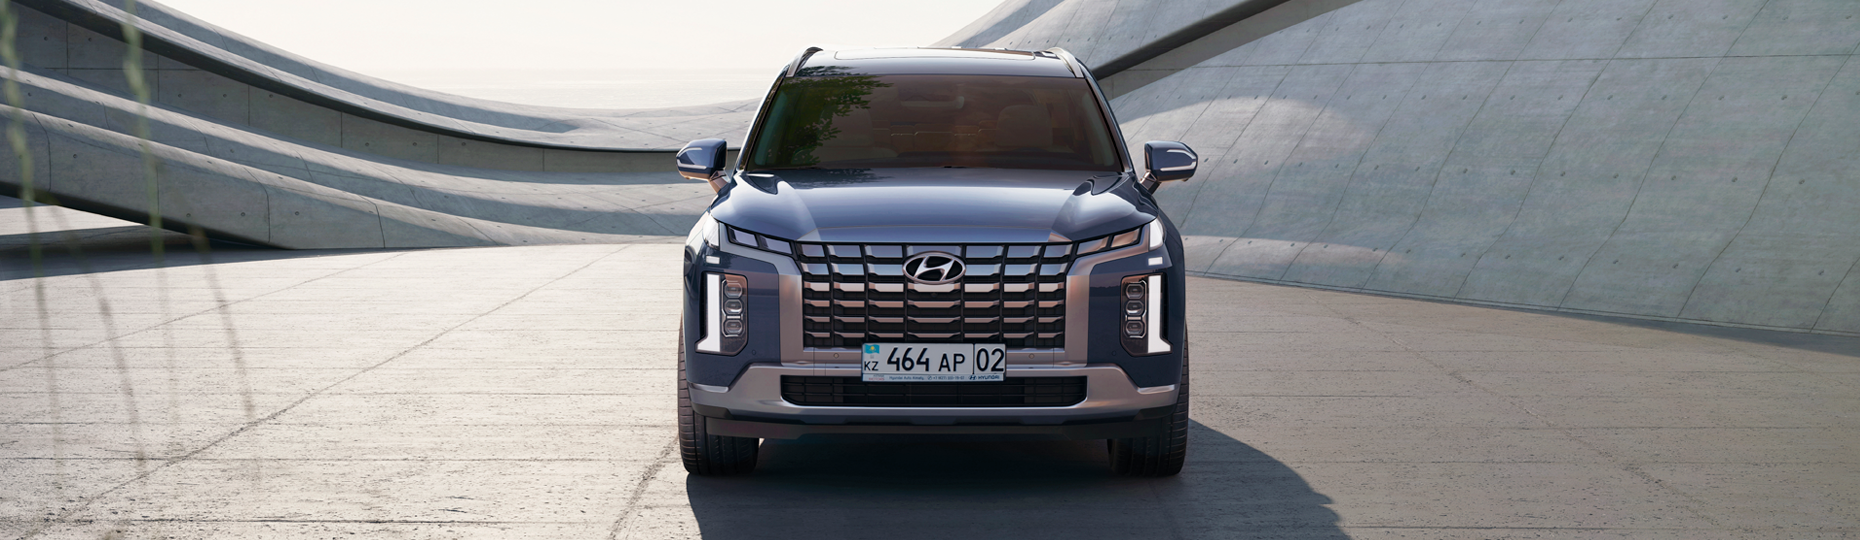 Безопасность новой Hyundai Palisade | Официальный дилер в Алматы